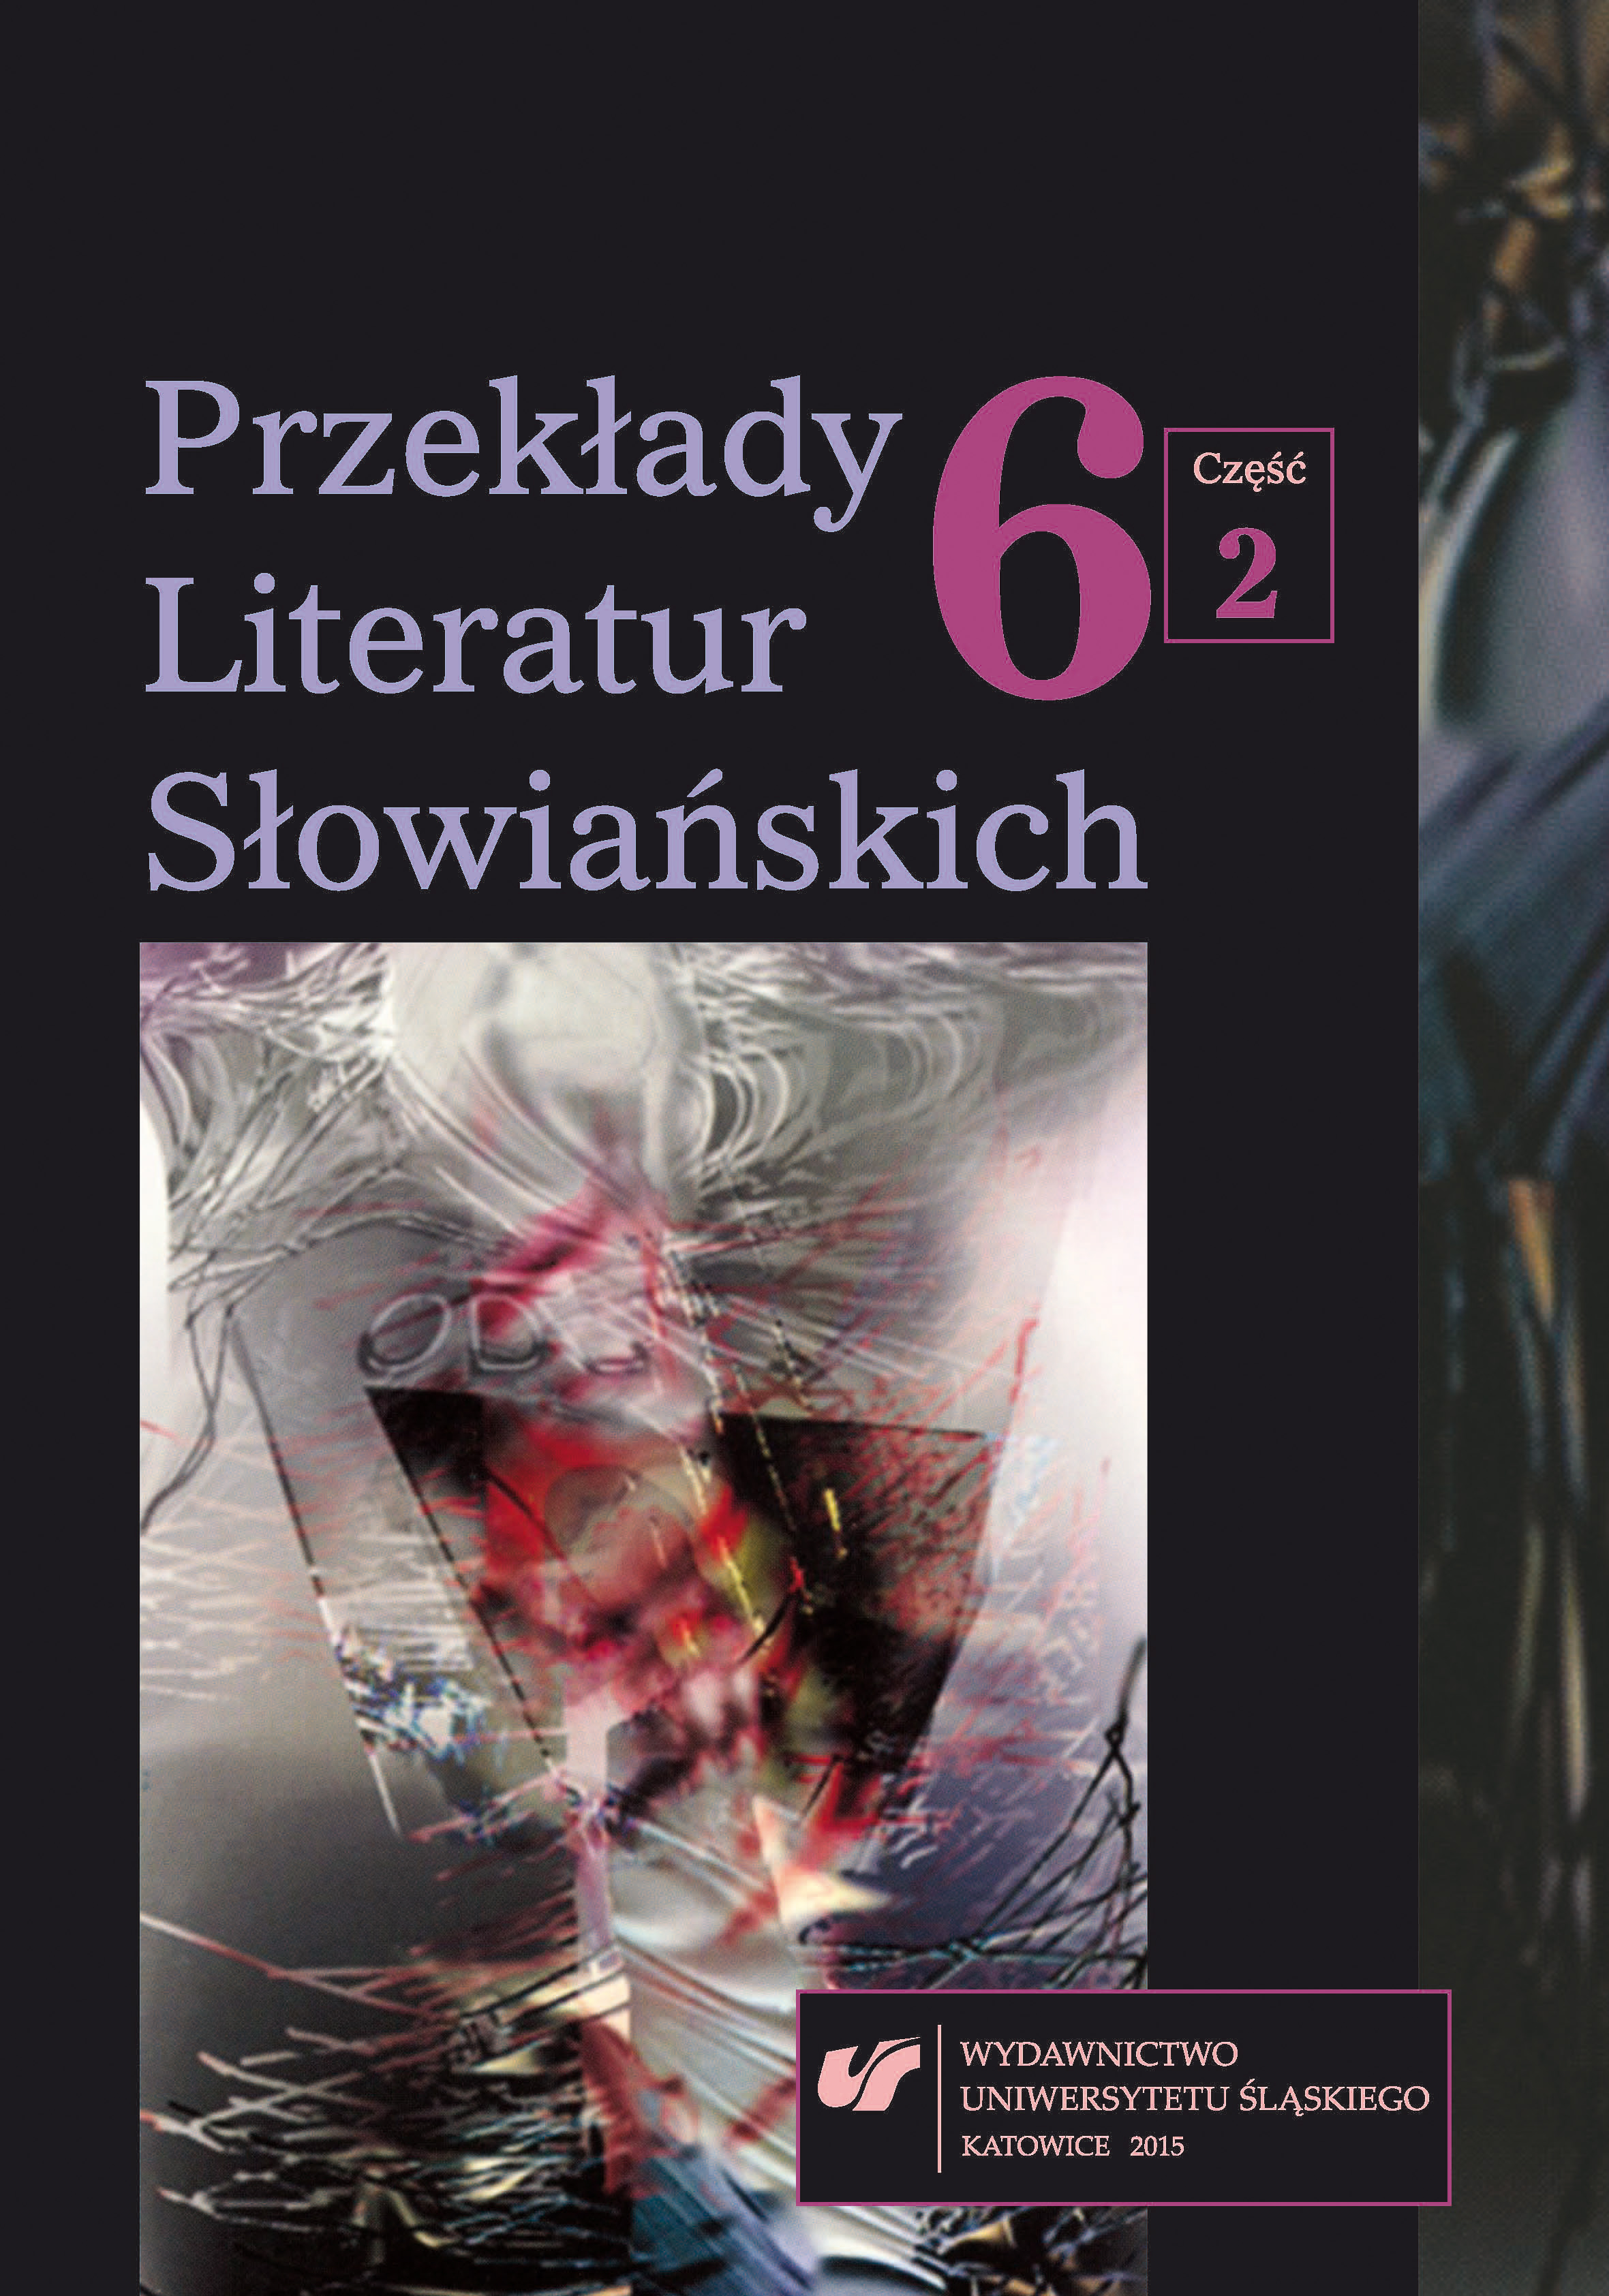 Bibliografia przekładów literatury bułgarskiej w Polsce w 2014 roku